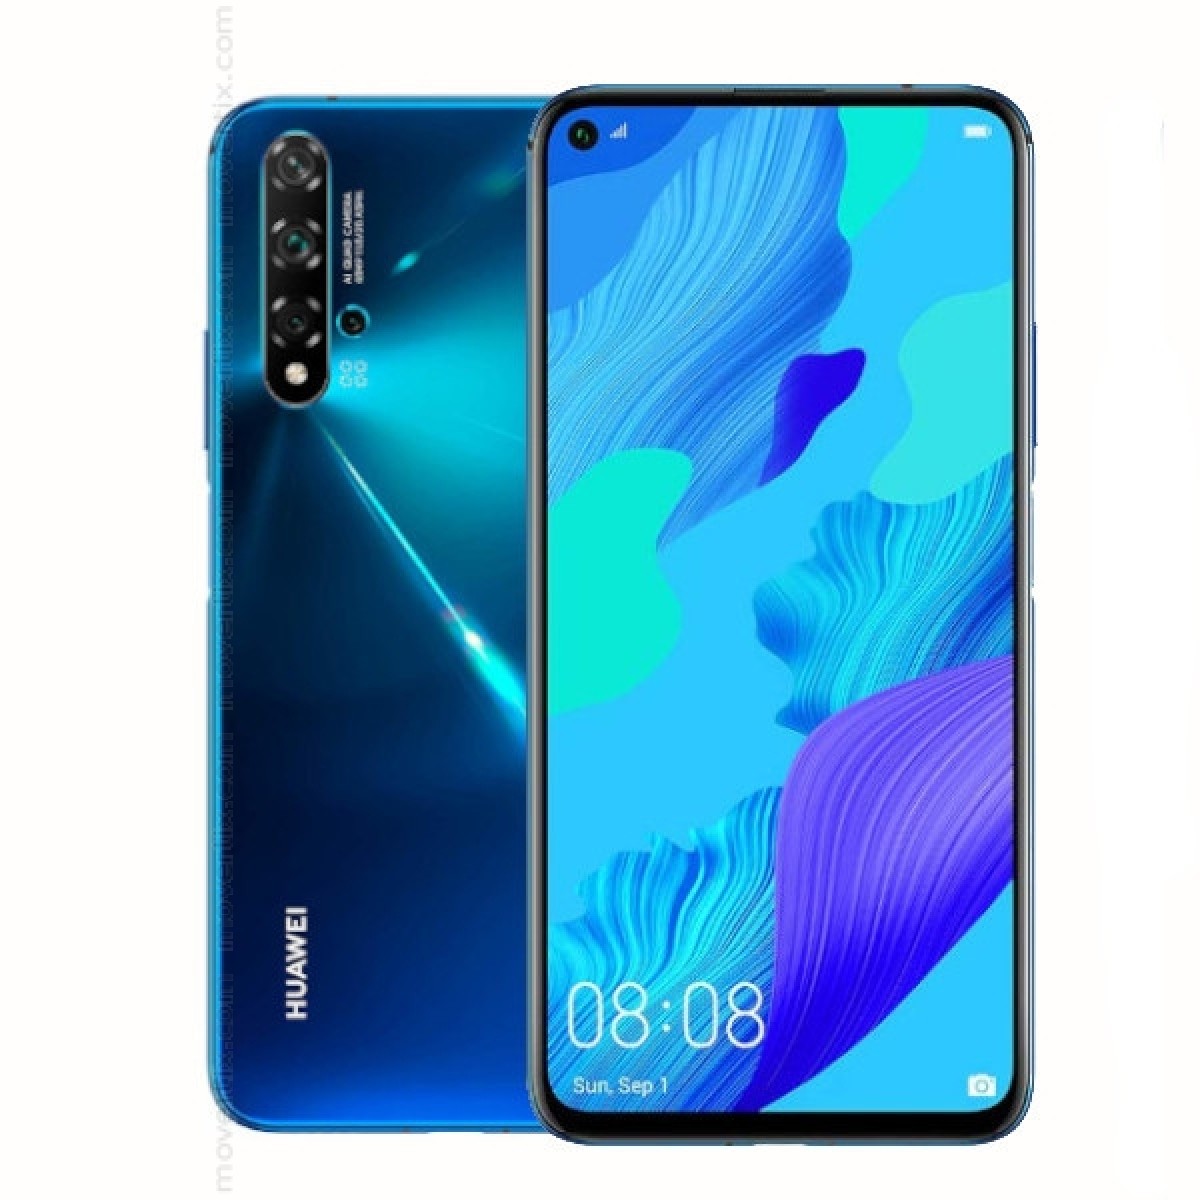 Huawei Nova 5T Dual SIM Crush Blue 128GB and 6GB RAM ...